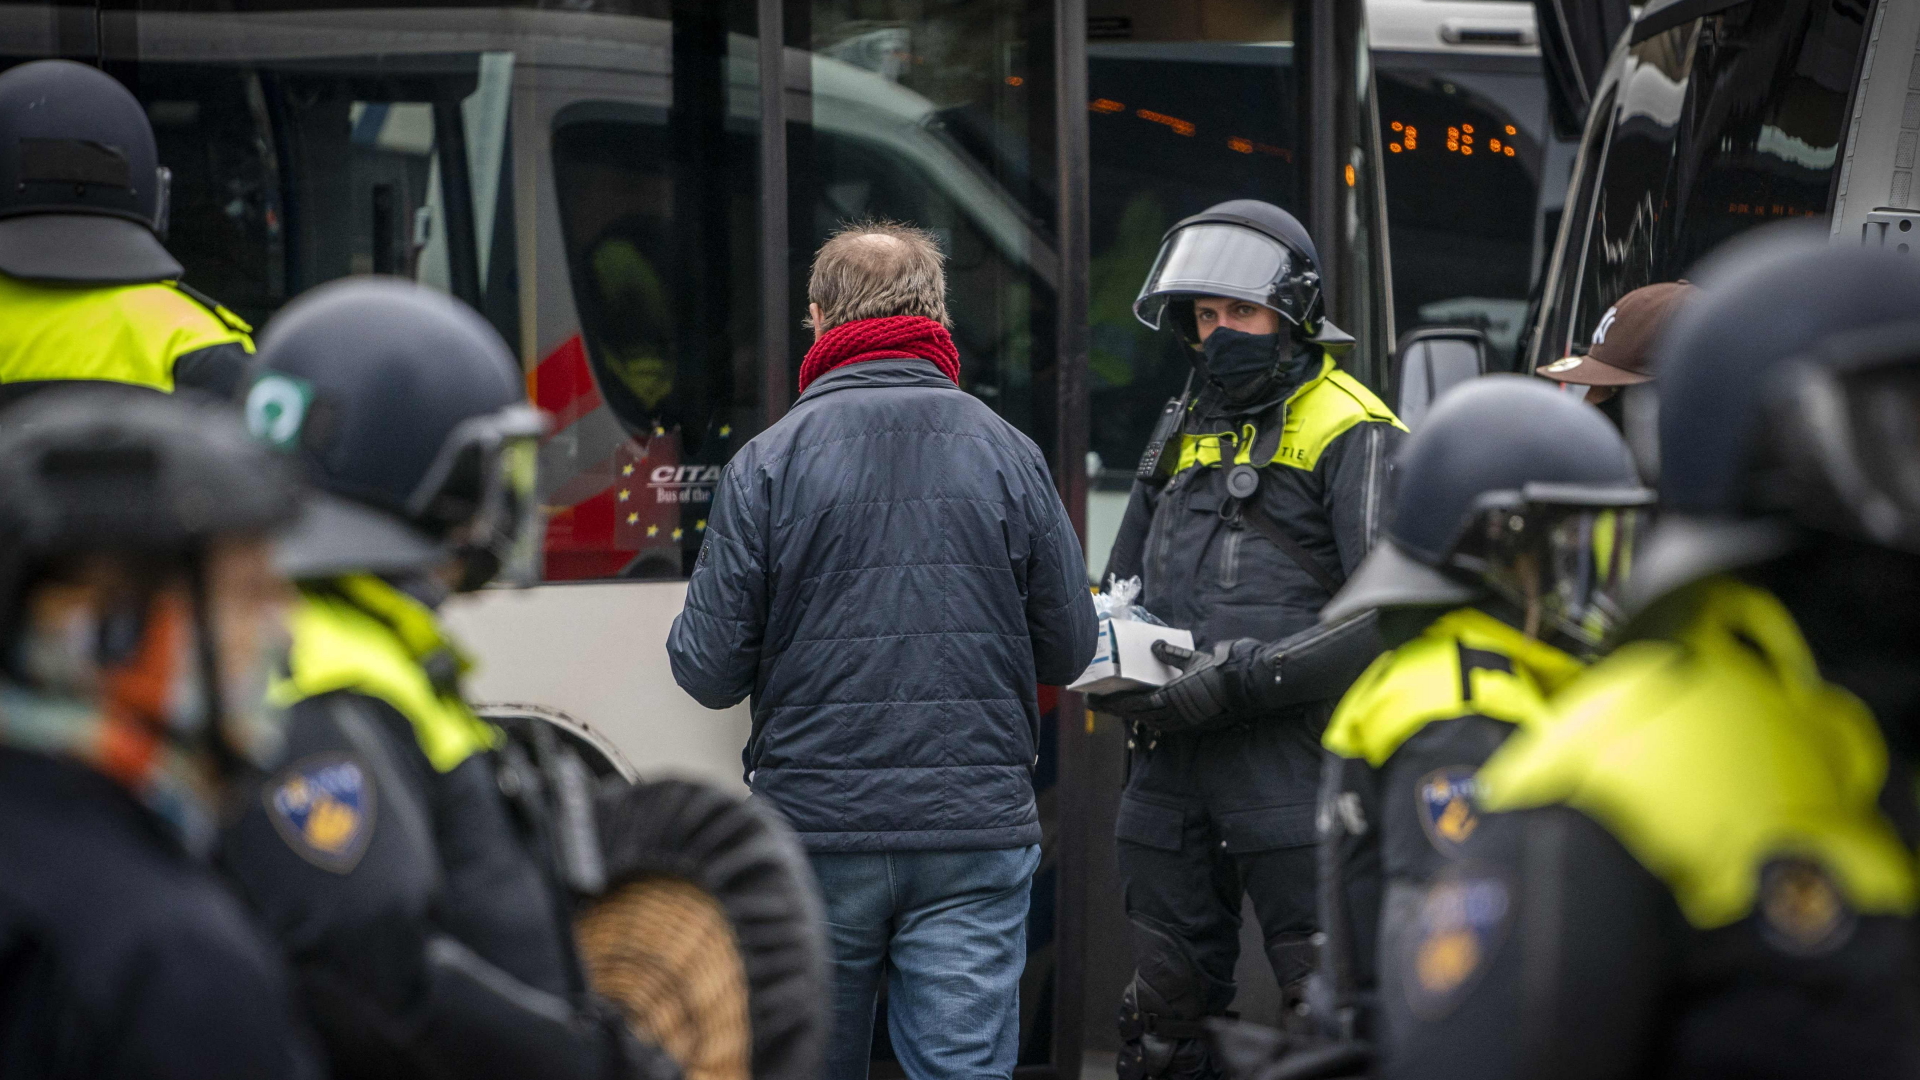 Polizisten haben in Amsterdam eine nicht genehmigte Demo aufgelöst  | AFP